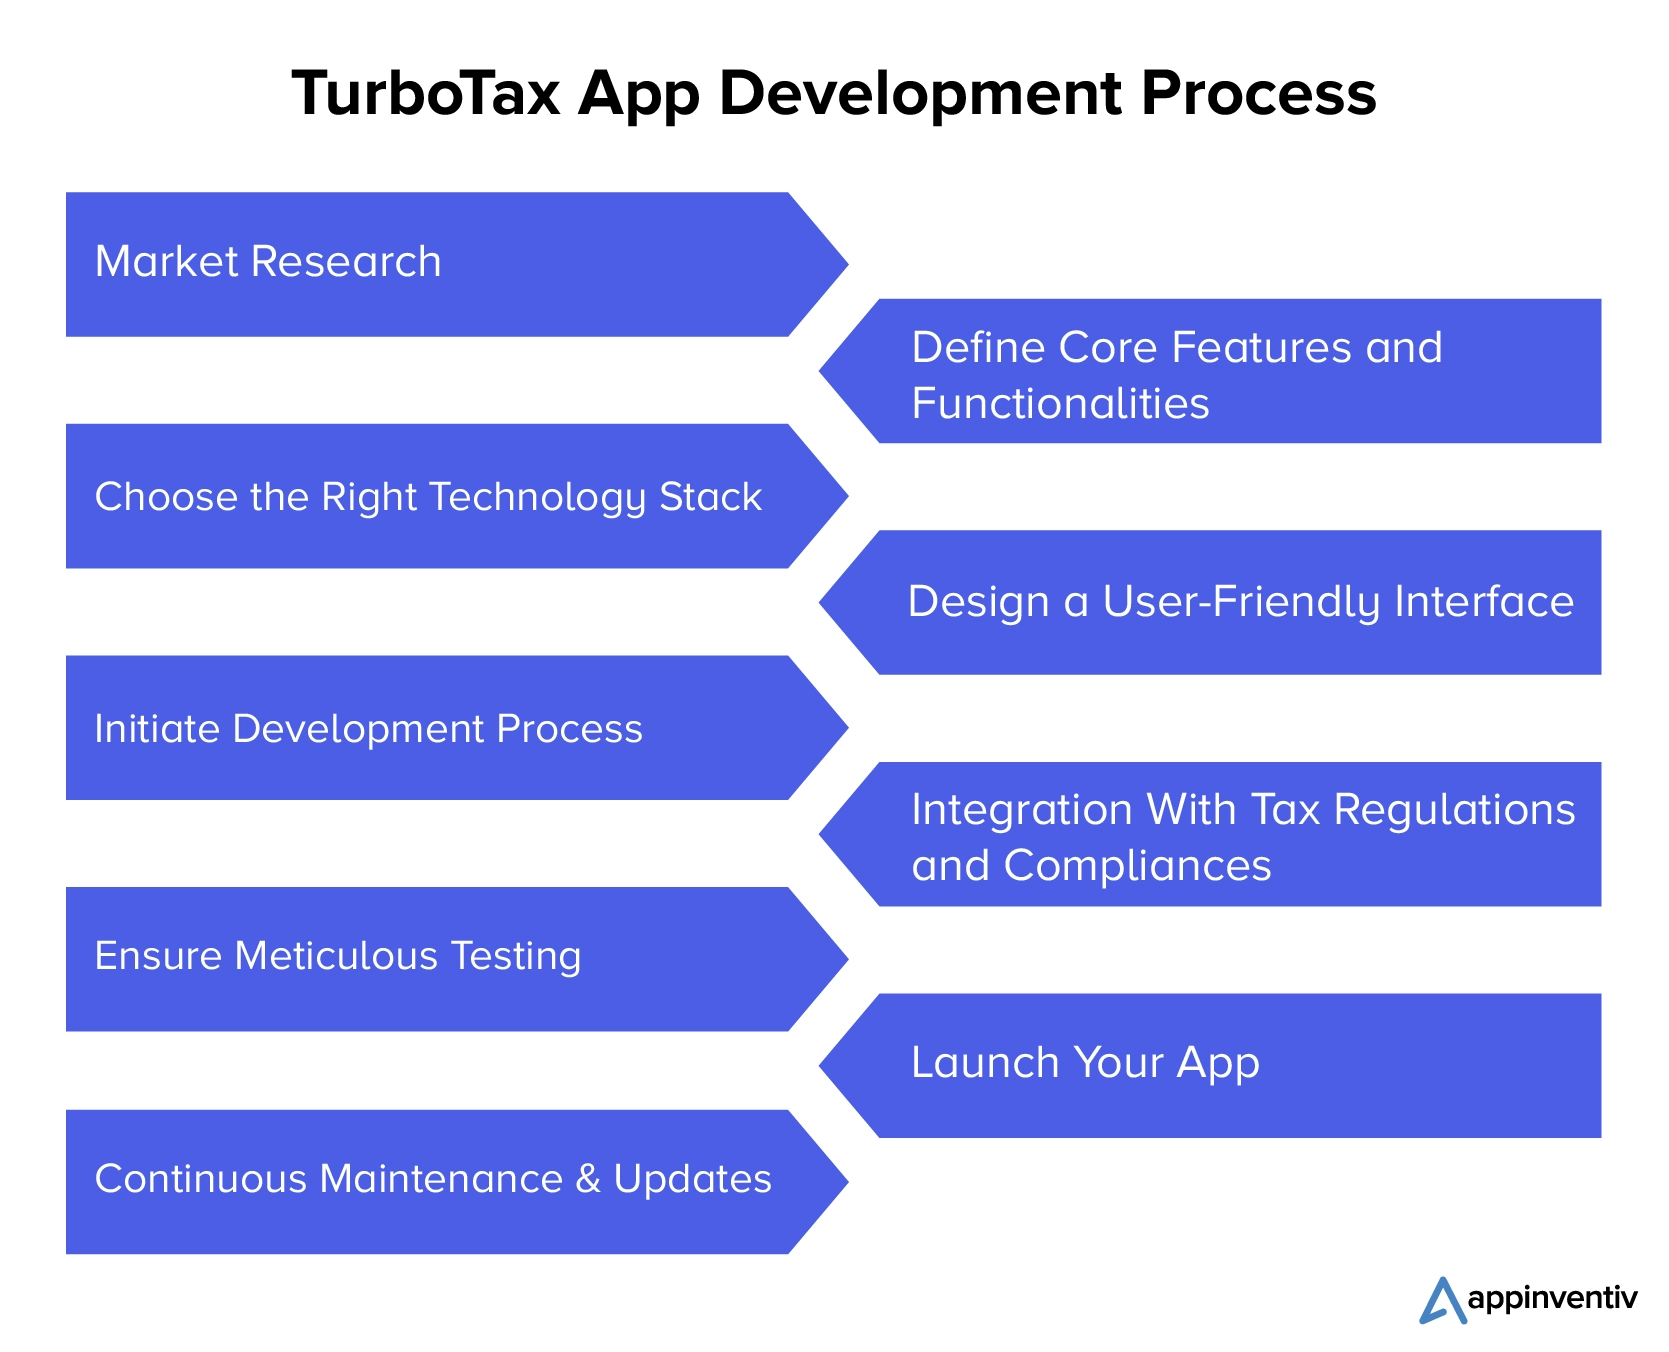 Steps to Create an App Like TurboTax